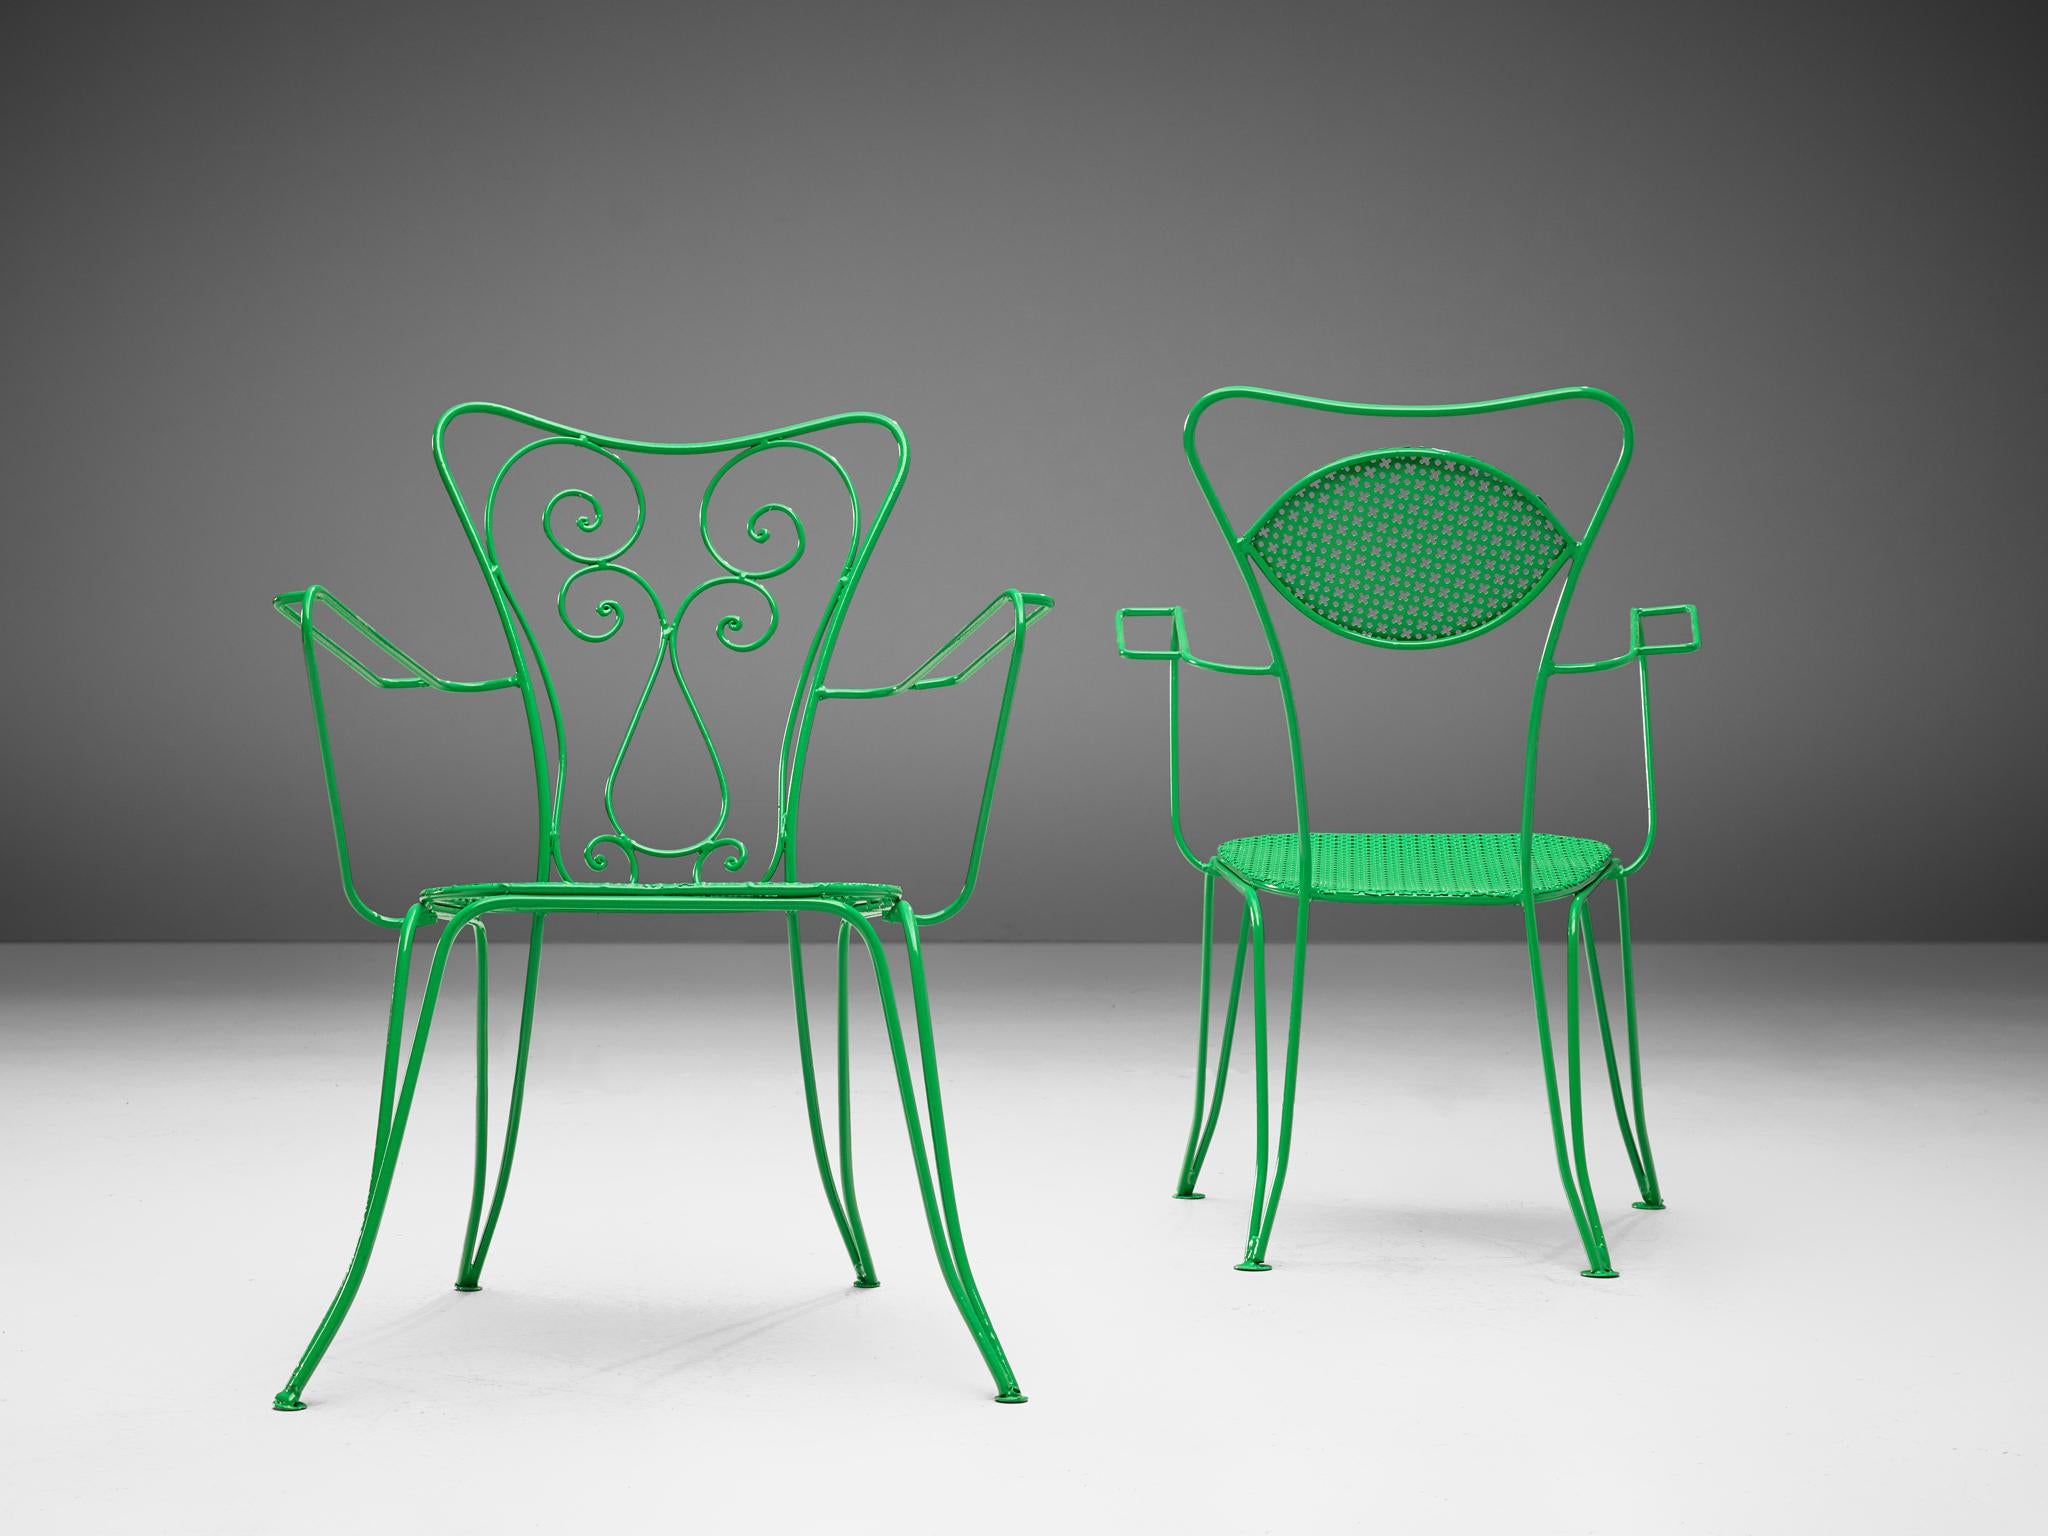  Satz italienischer Terrassenstühle aus grün lackiertem Stahl (Metall) im Angebot